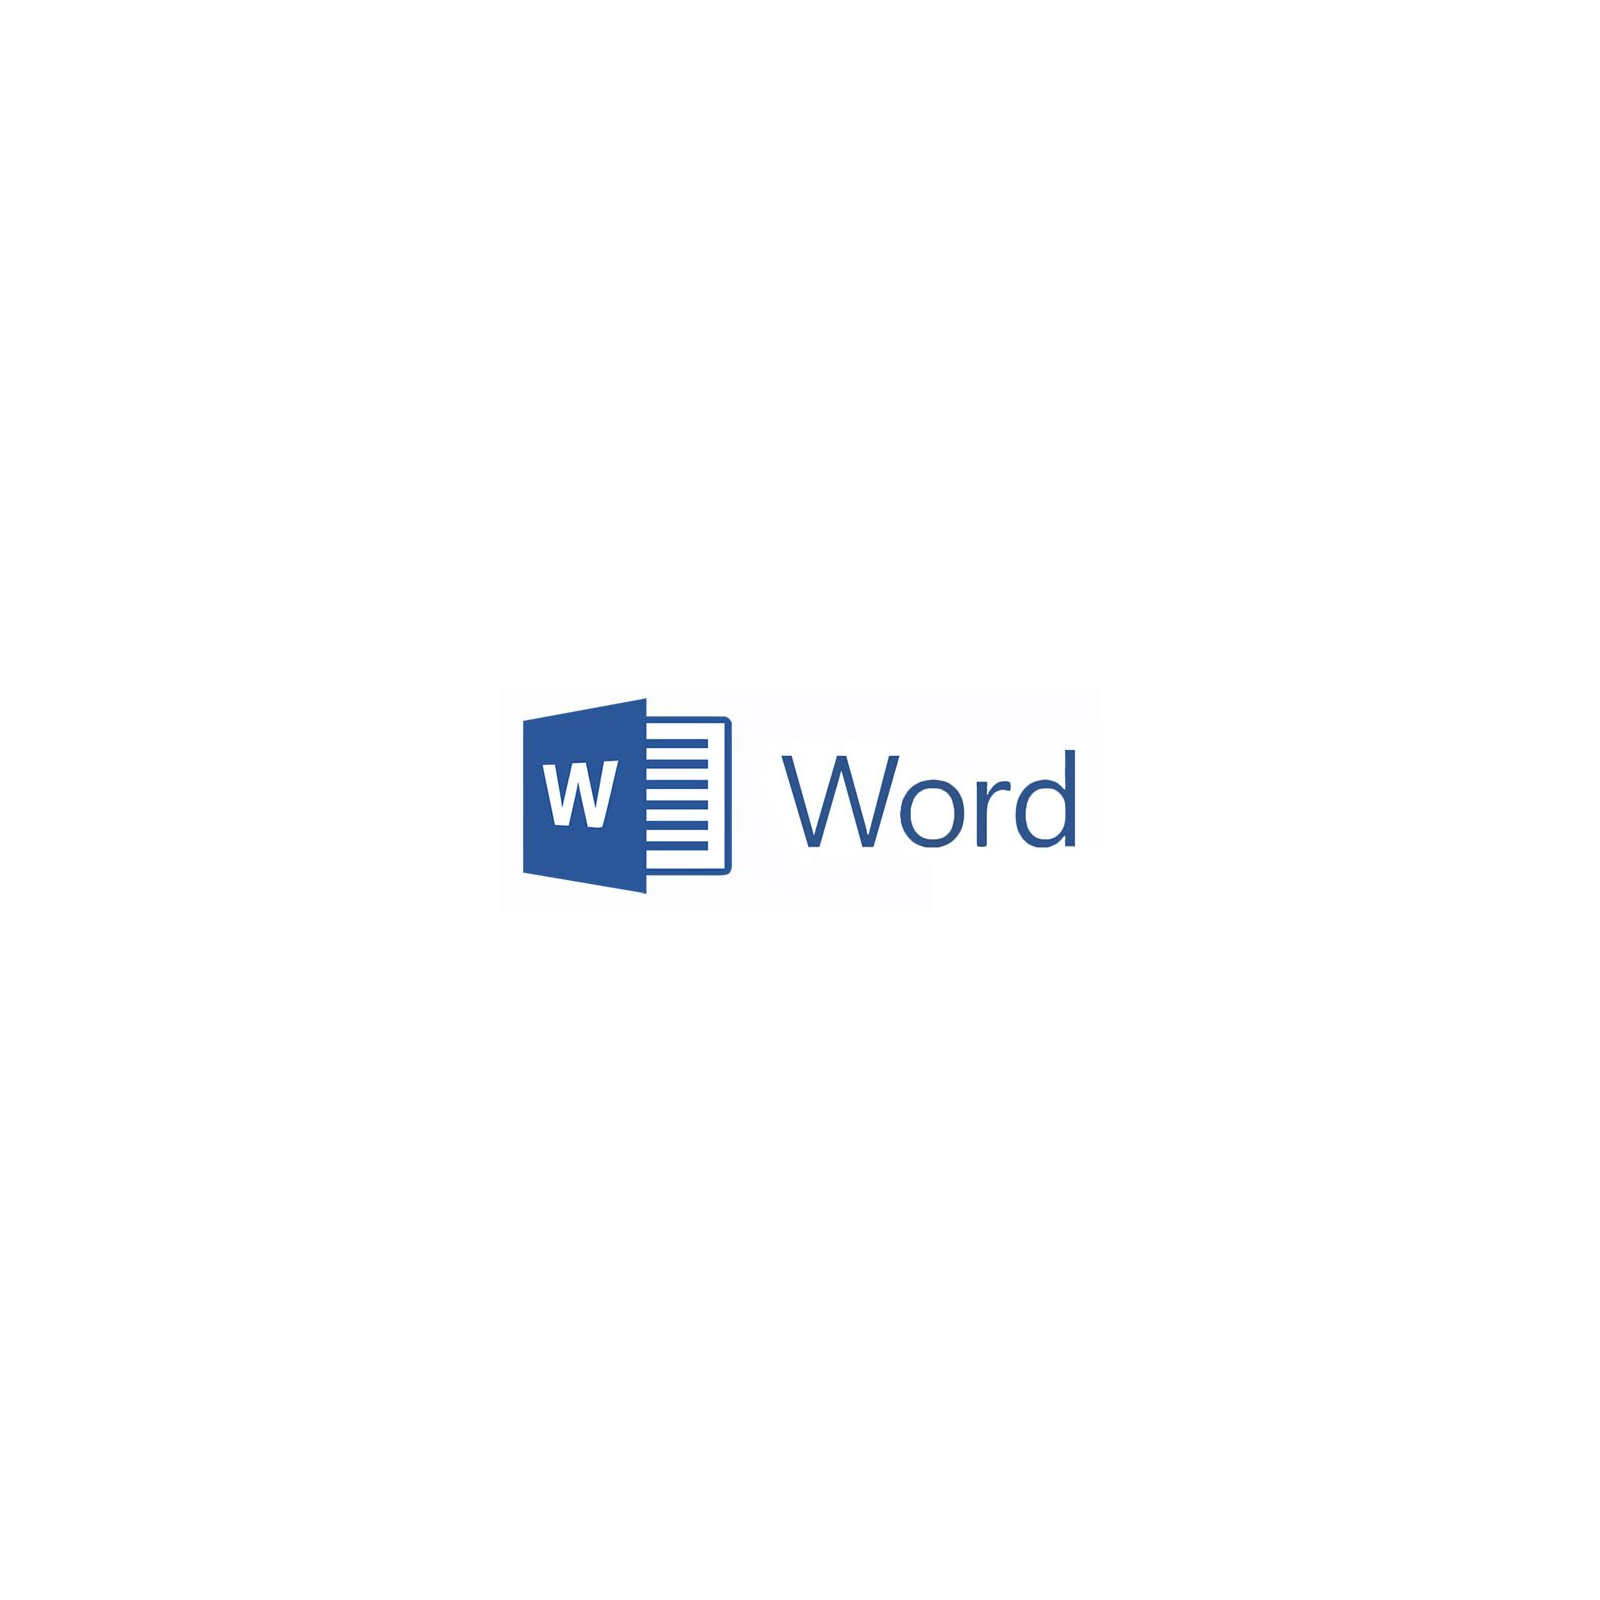 Программная продукция Microsoft WordMac 2016 SNGL OLP NL Acdmc (D48-01094)